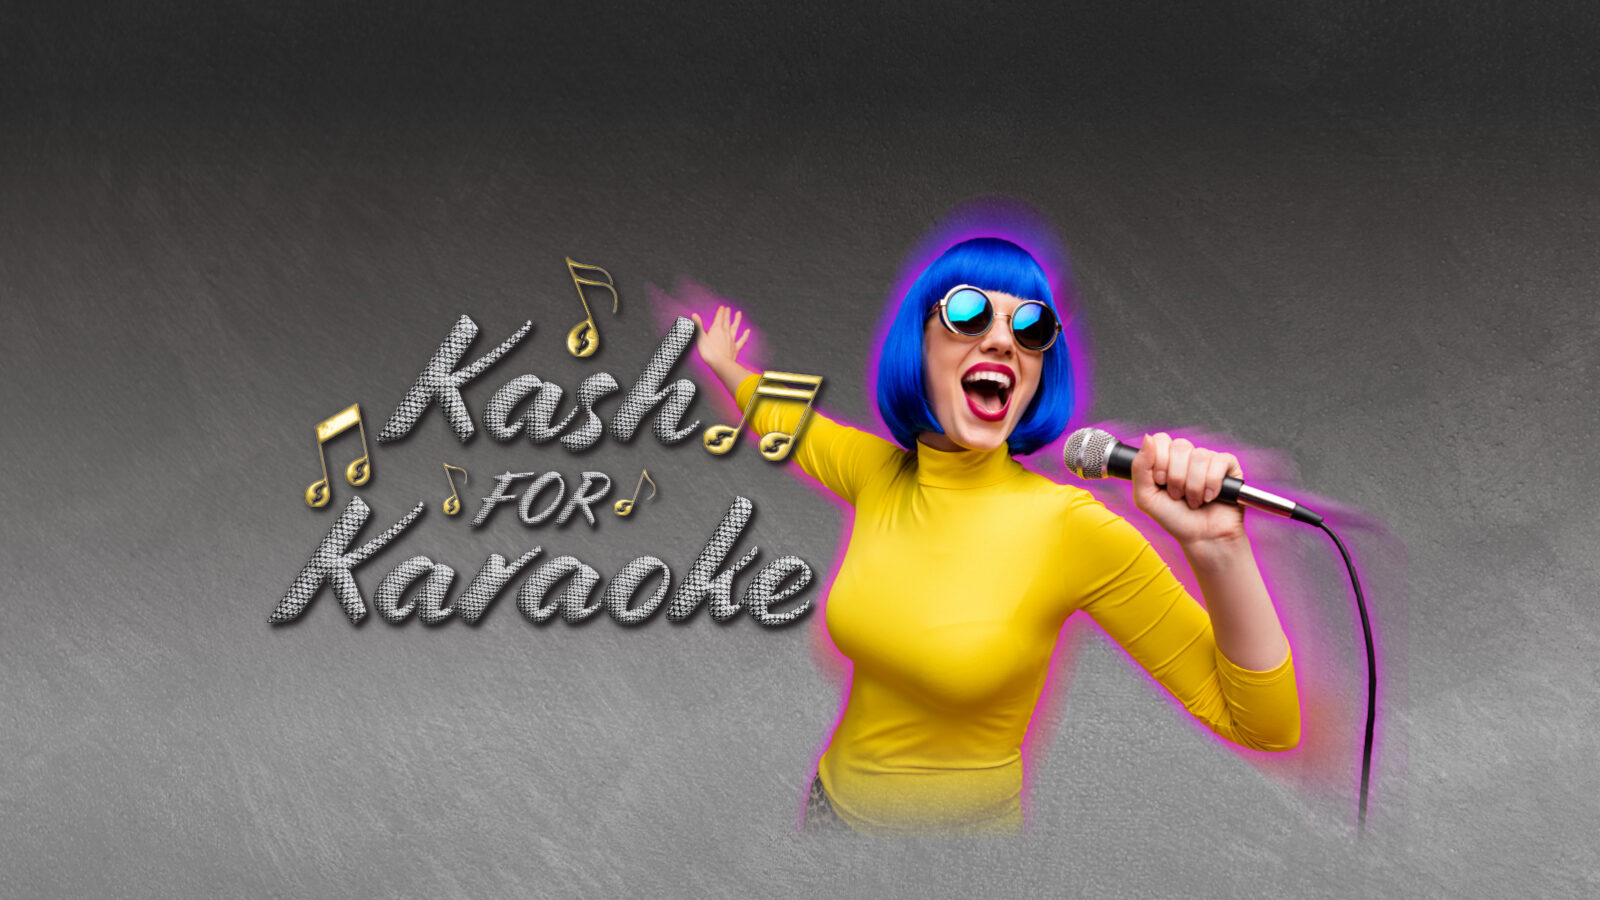 Kash for Karaoke